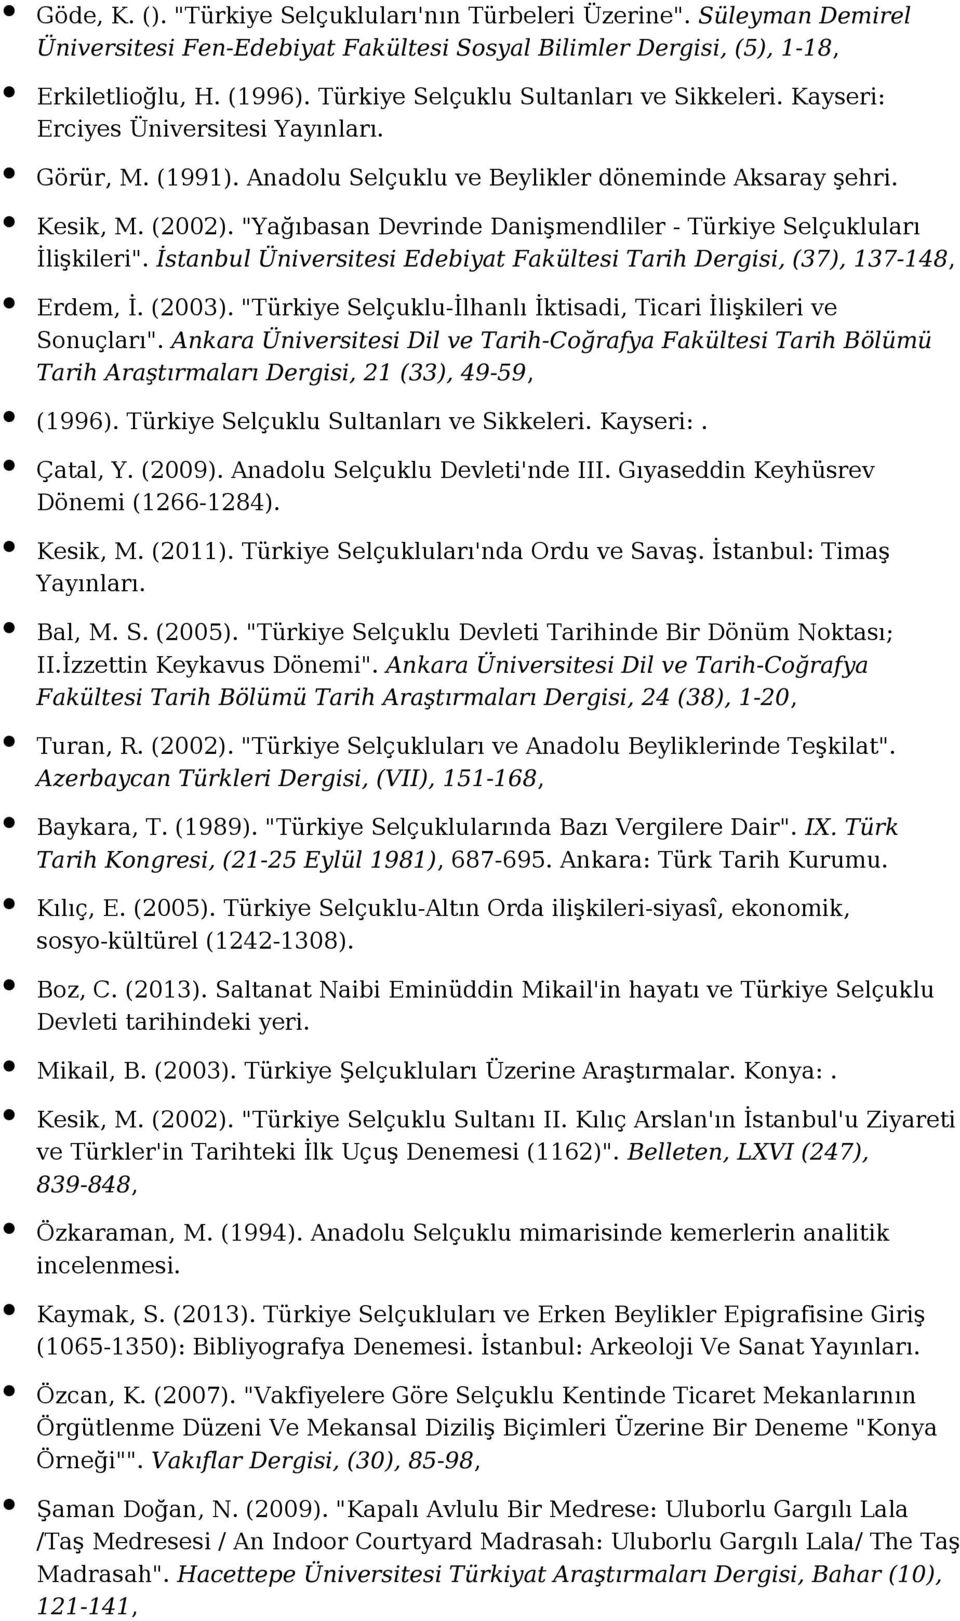 "Yağıbasan Devrinde Danişmendliler - Türkiye Selçukluları İlişkileri". İstanbul Üniversitesi Edebiyat Fakültesi Tarih Dergisi, (37), 137-148, Erdem, İ. (2003).